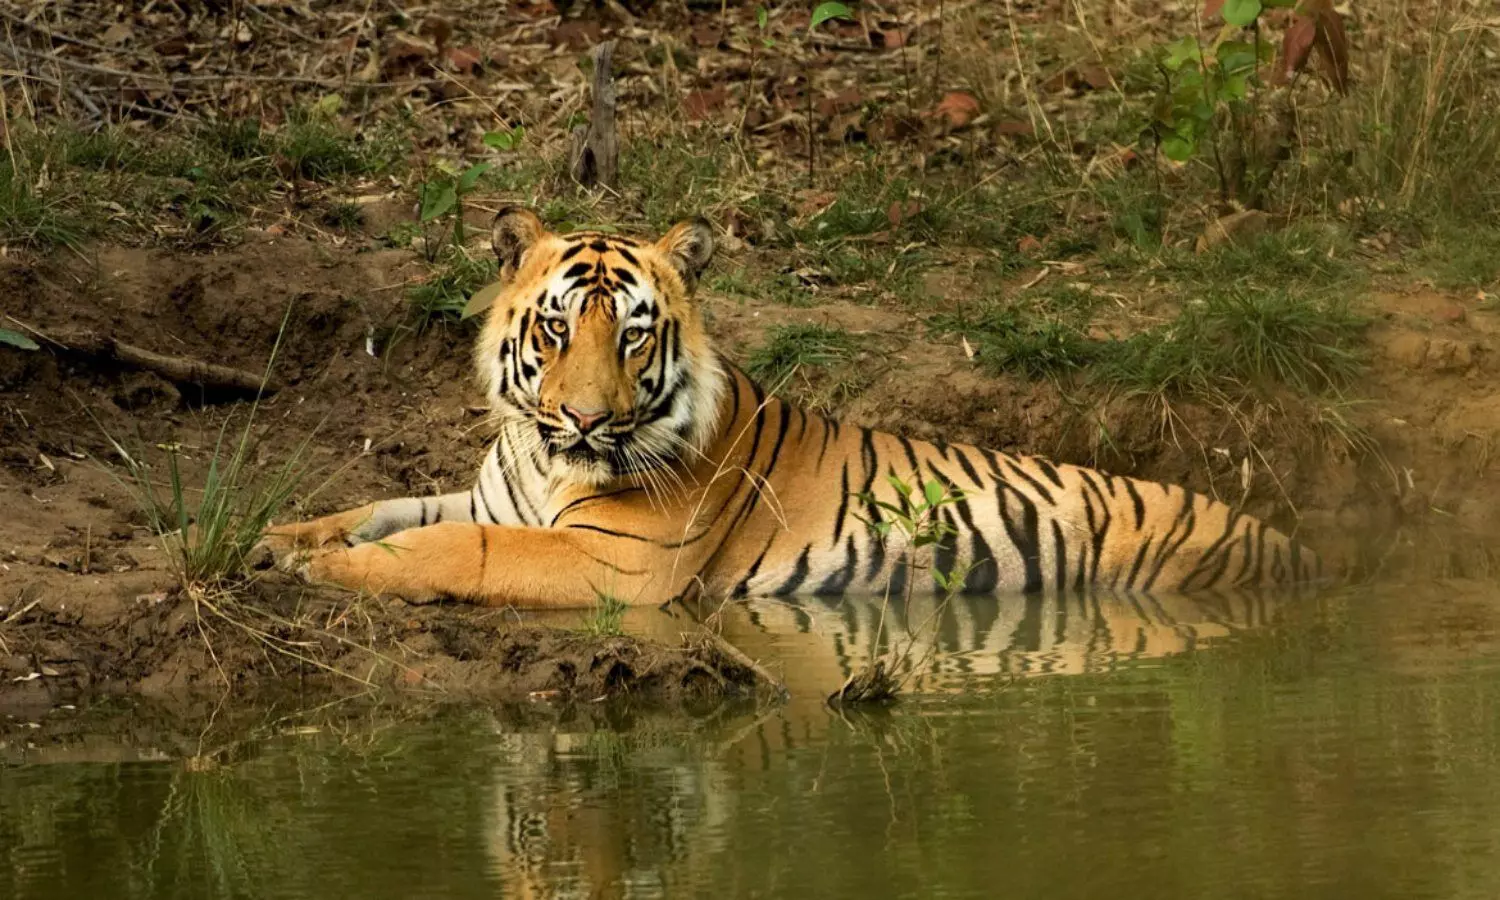 Tiger Death News: भारत में बाघों का संकट! दो महीने में 30 की मौत, सबसे ज्यादा एमपी में, जानिए वजह